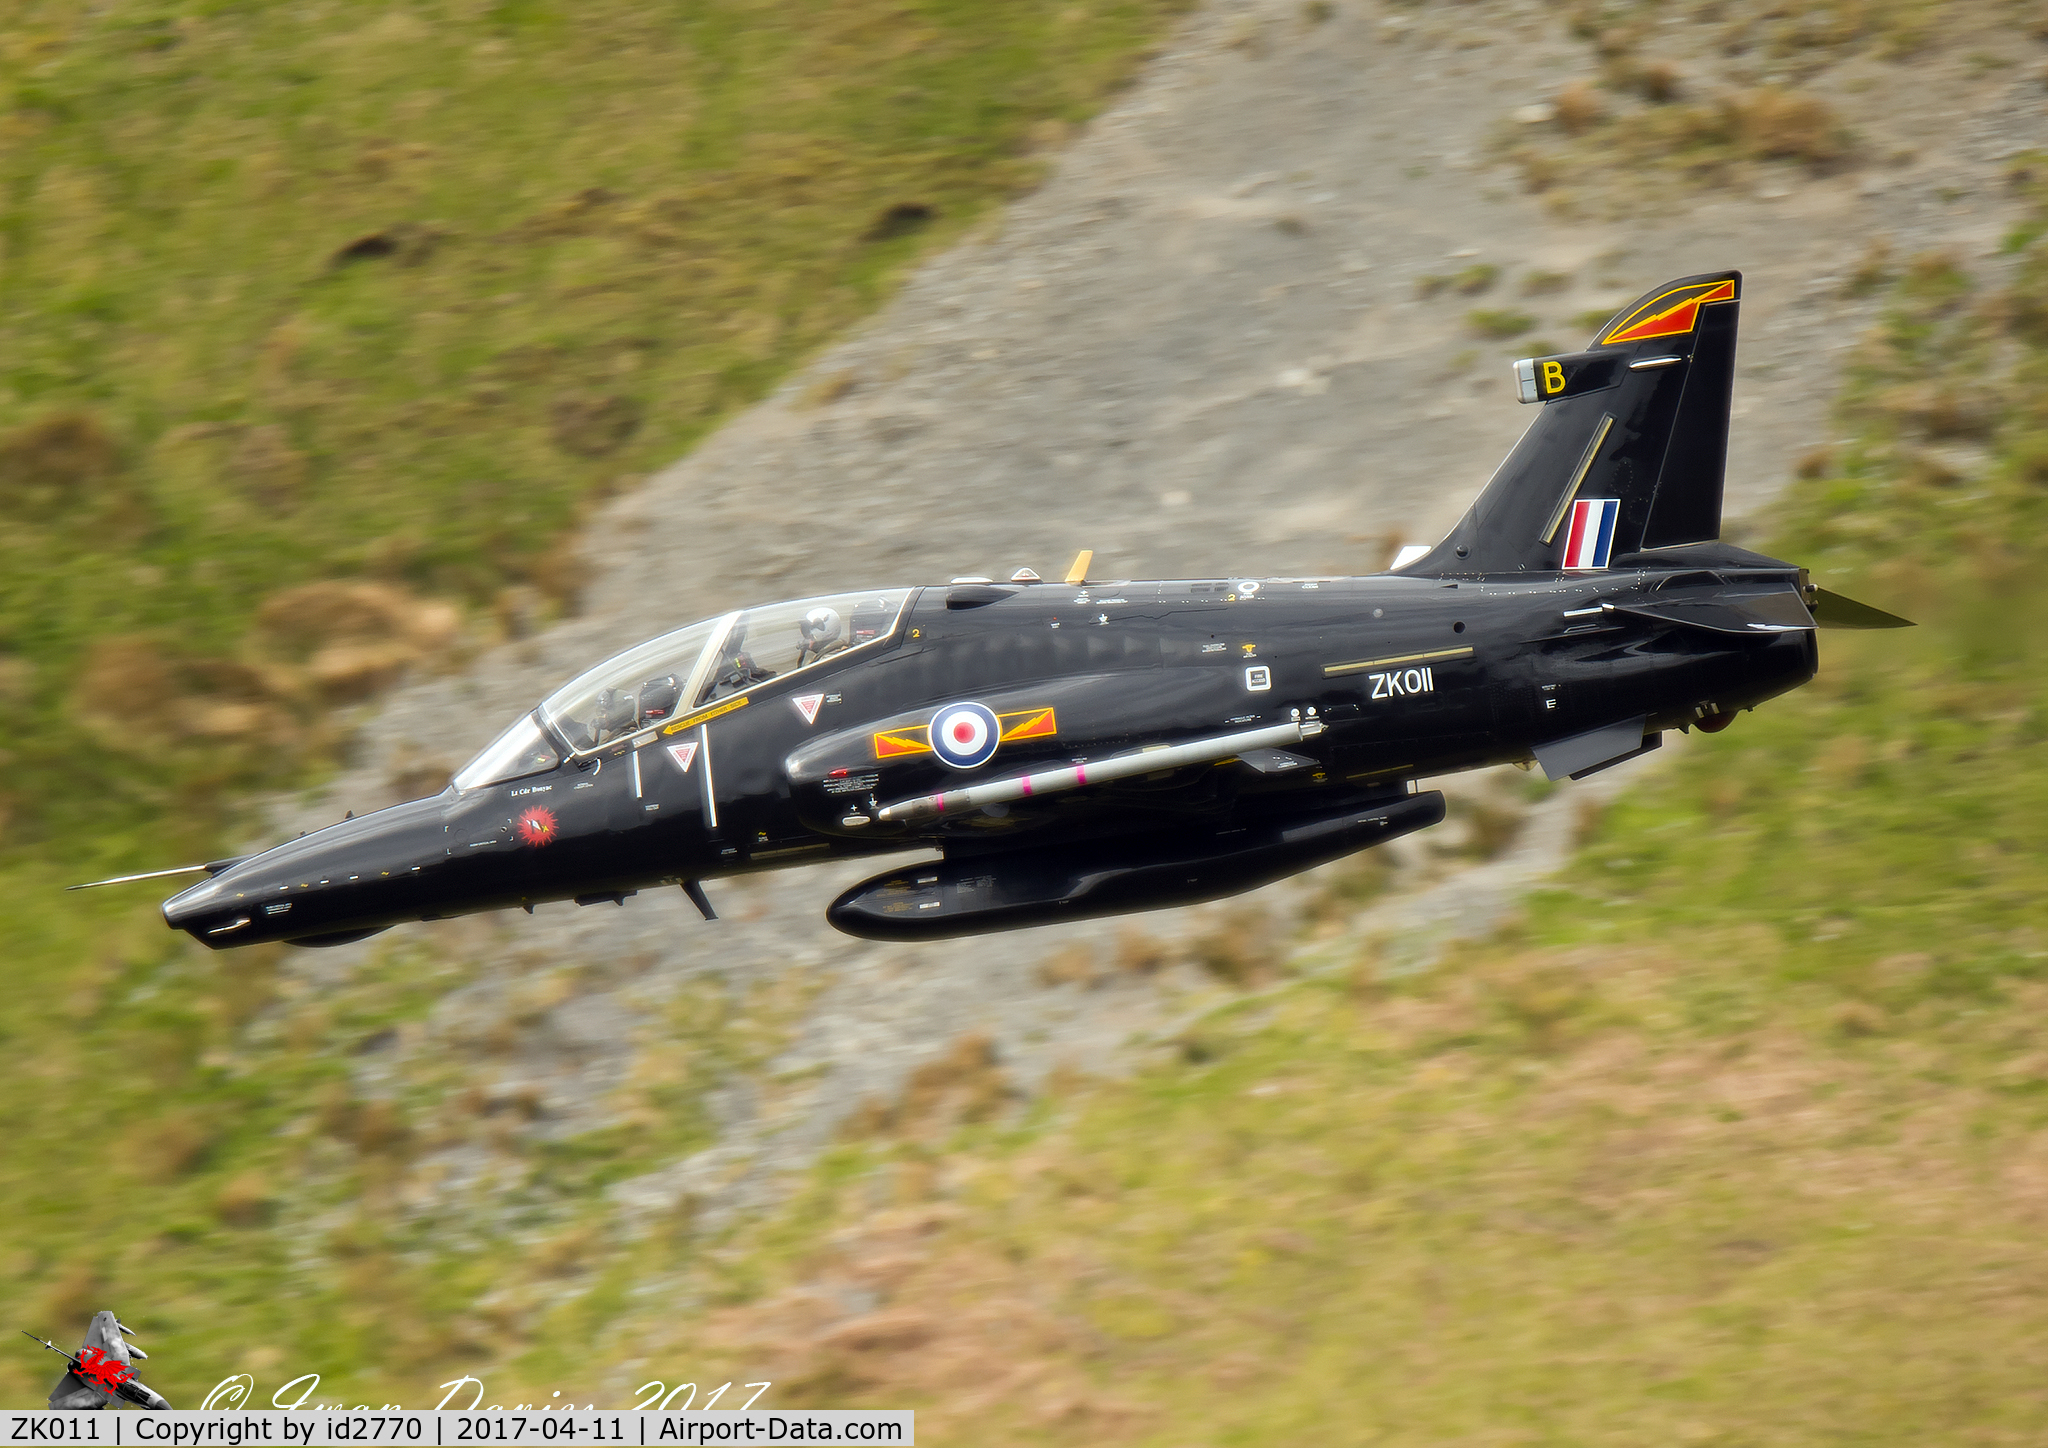 ZK011, 2006 British Aerospace Hawk T2 C/N RT002/1240, Taken on approach to Tal Y Llyn Lake, North Wales